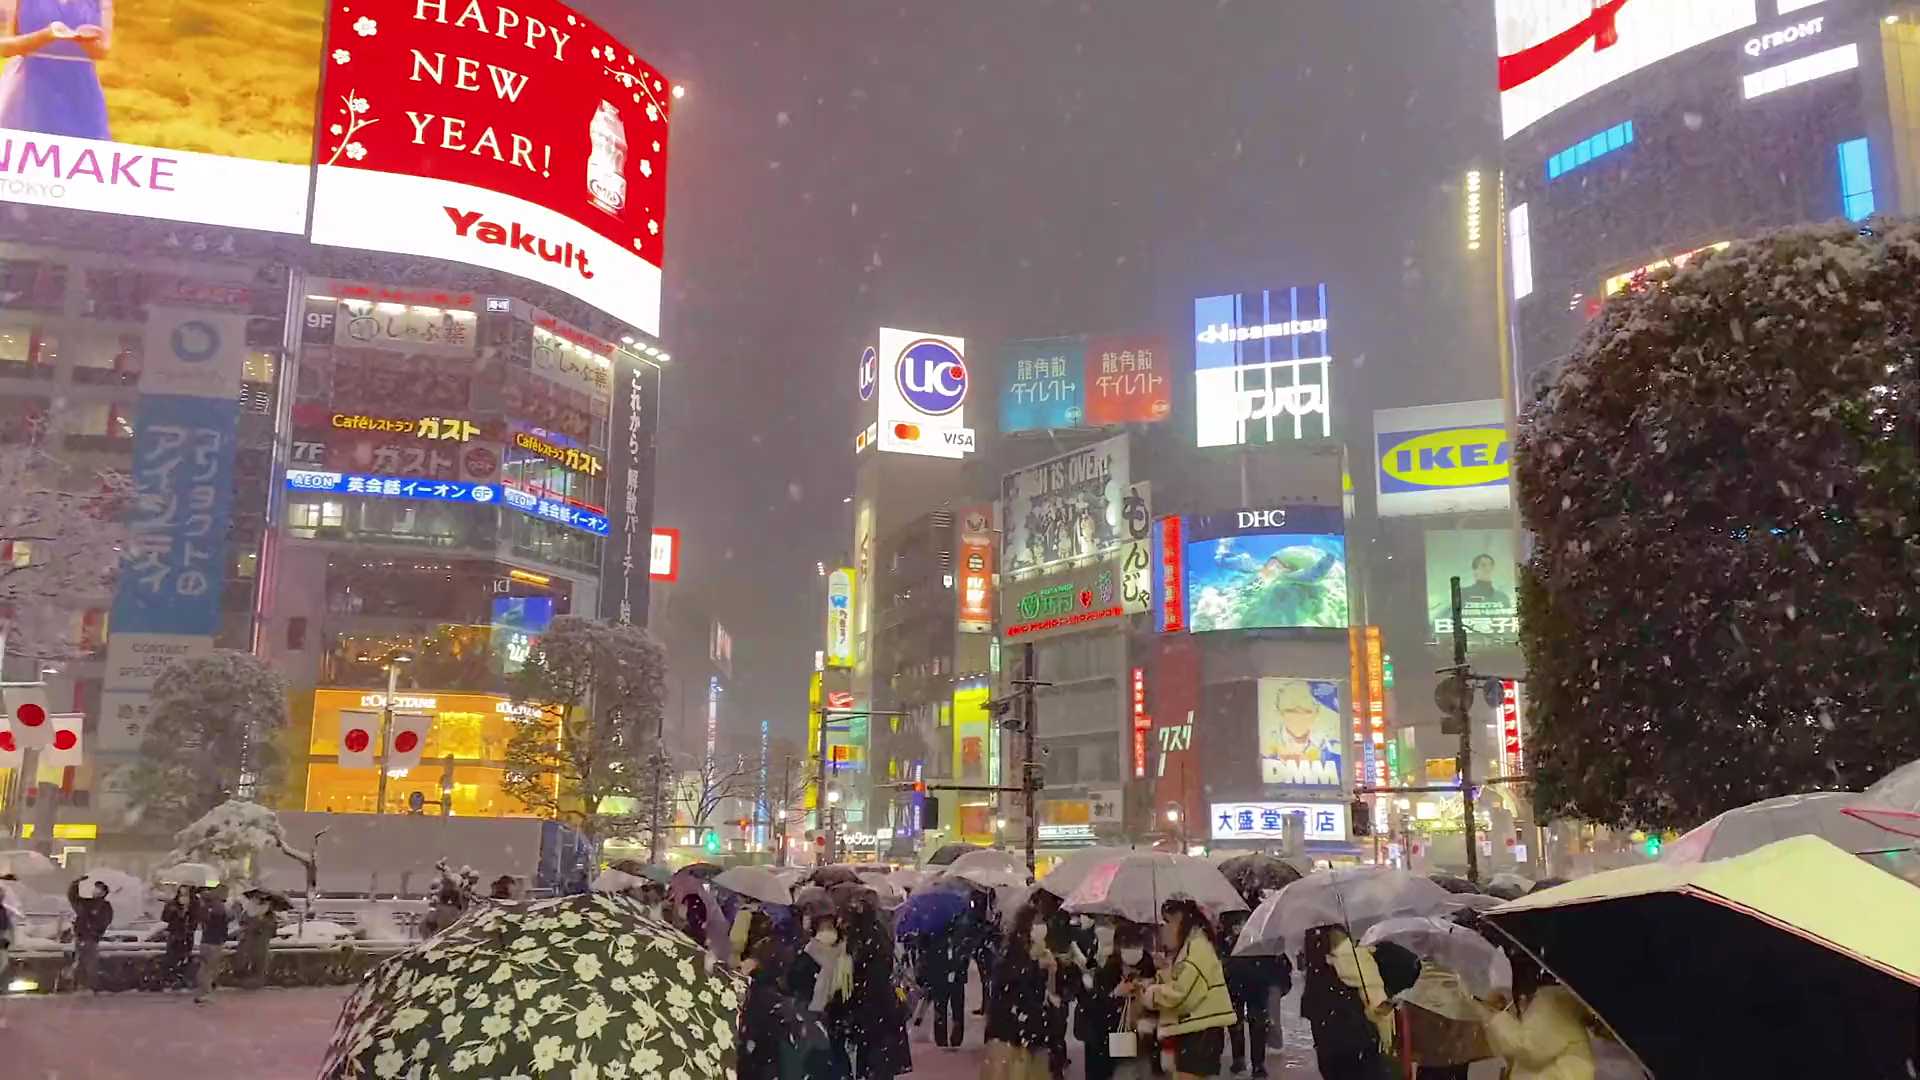 下雪的东京,格外浪漫,像不像日剧照进现实?